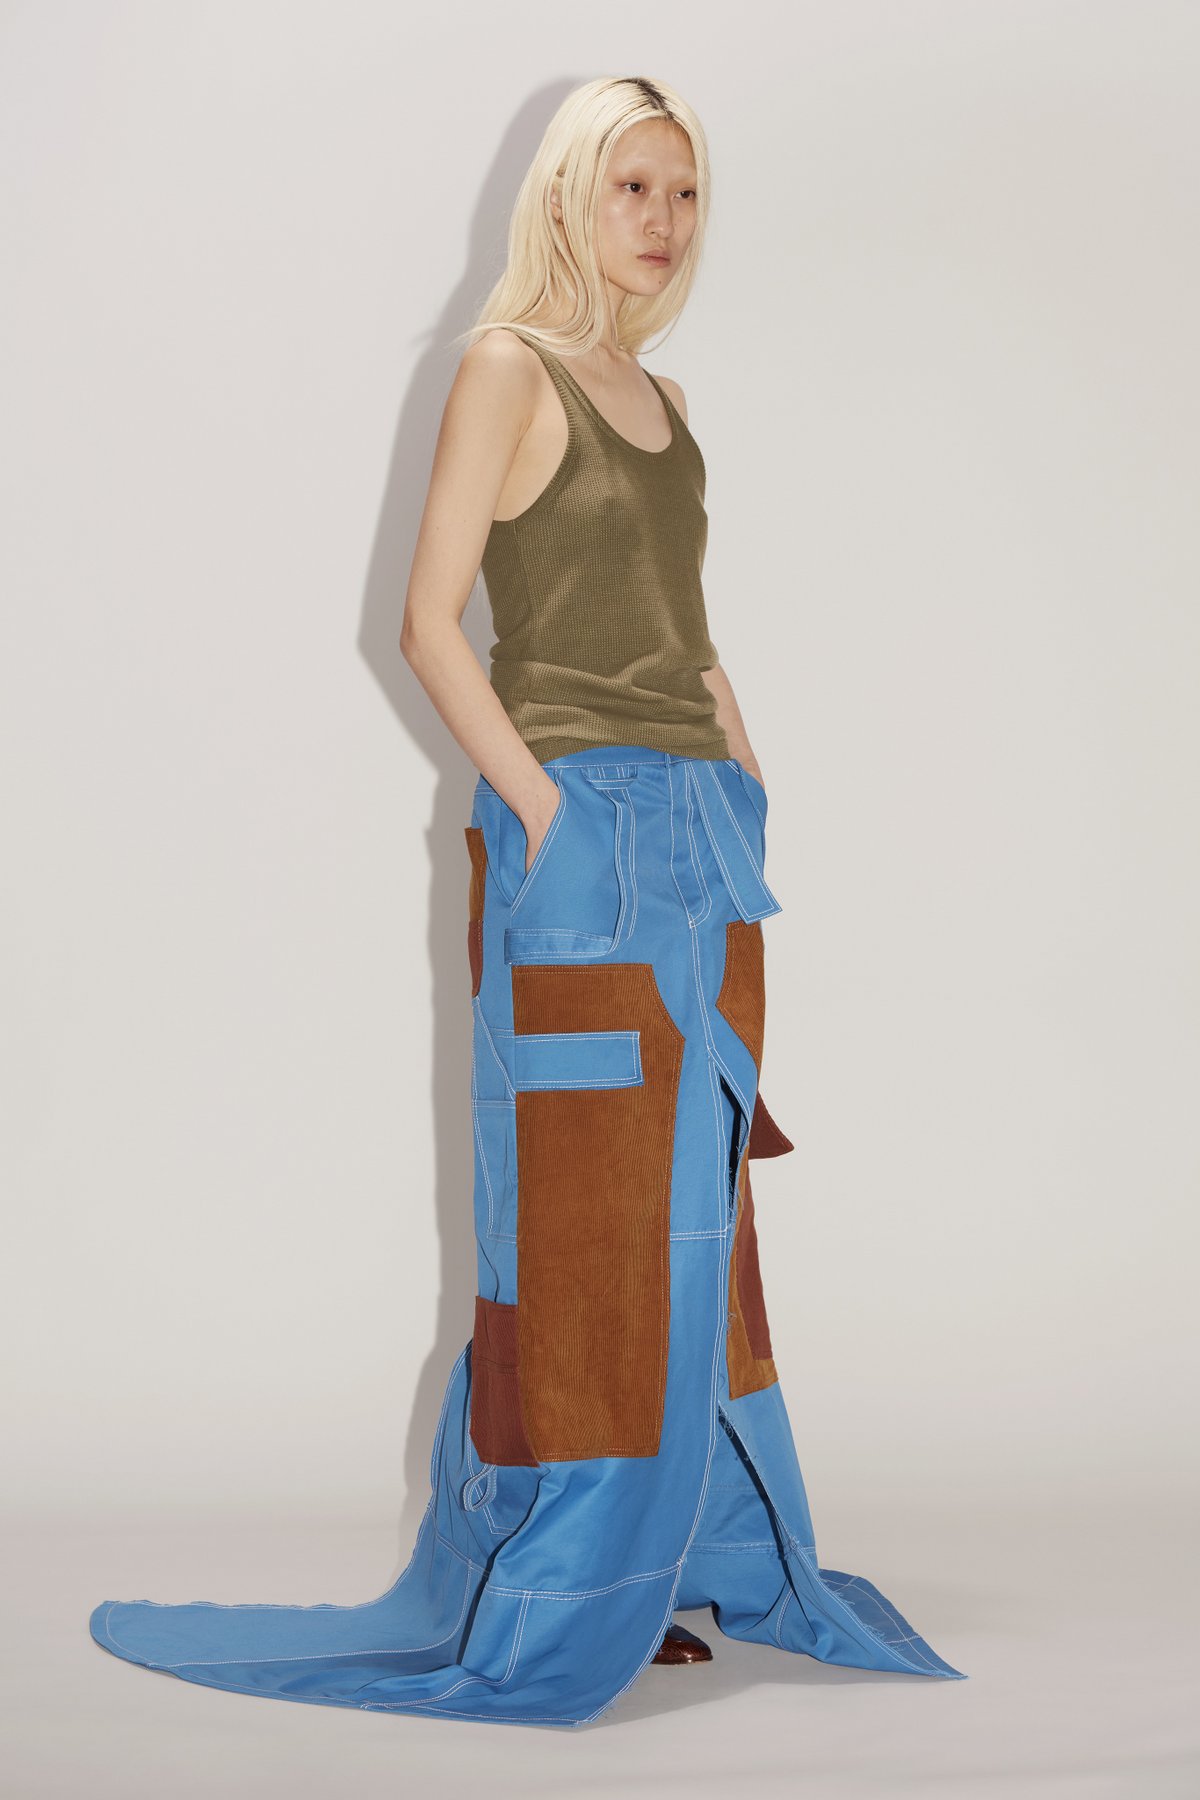 値引き上限 Meryll Rogge スカート | artfive.co.jp